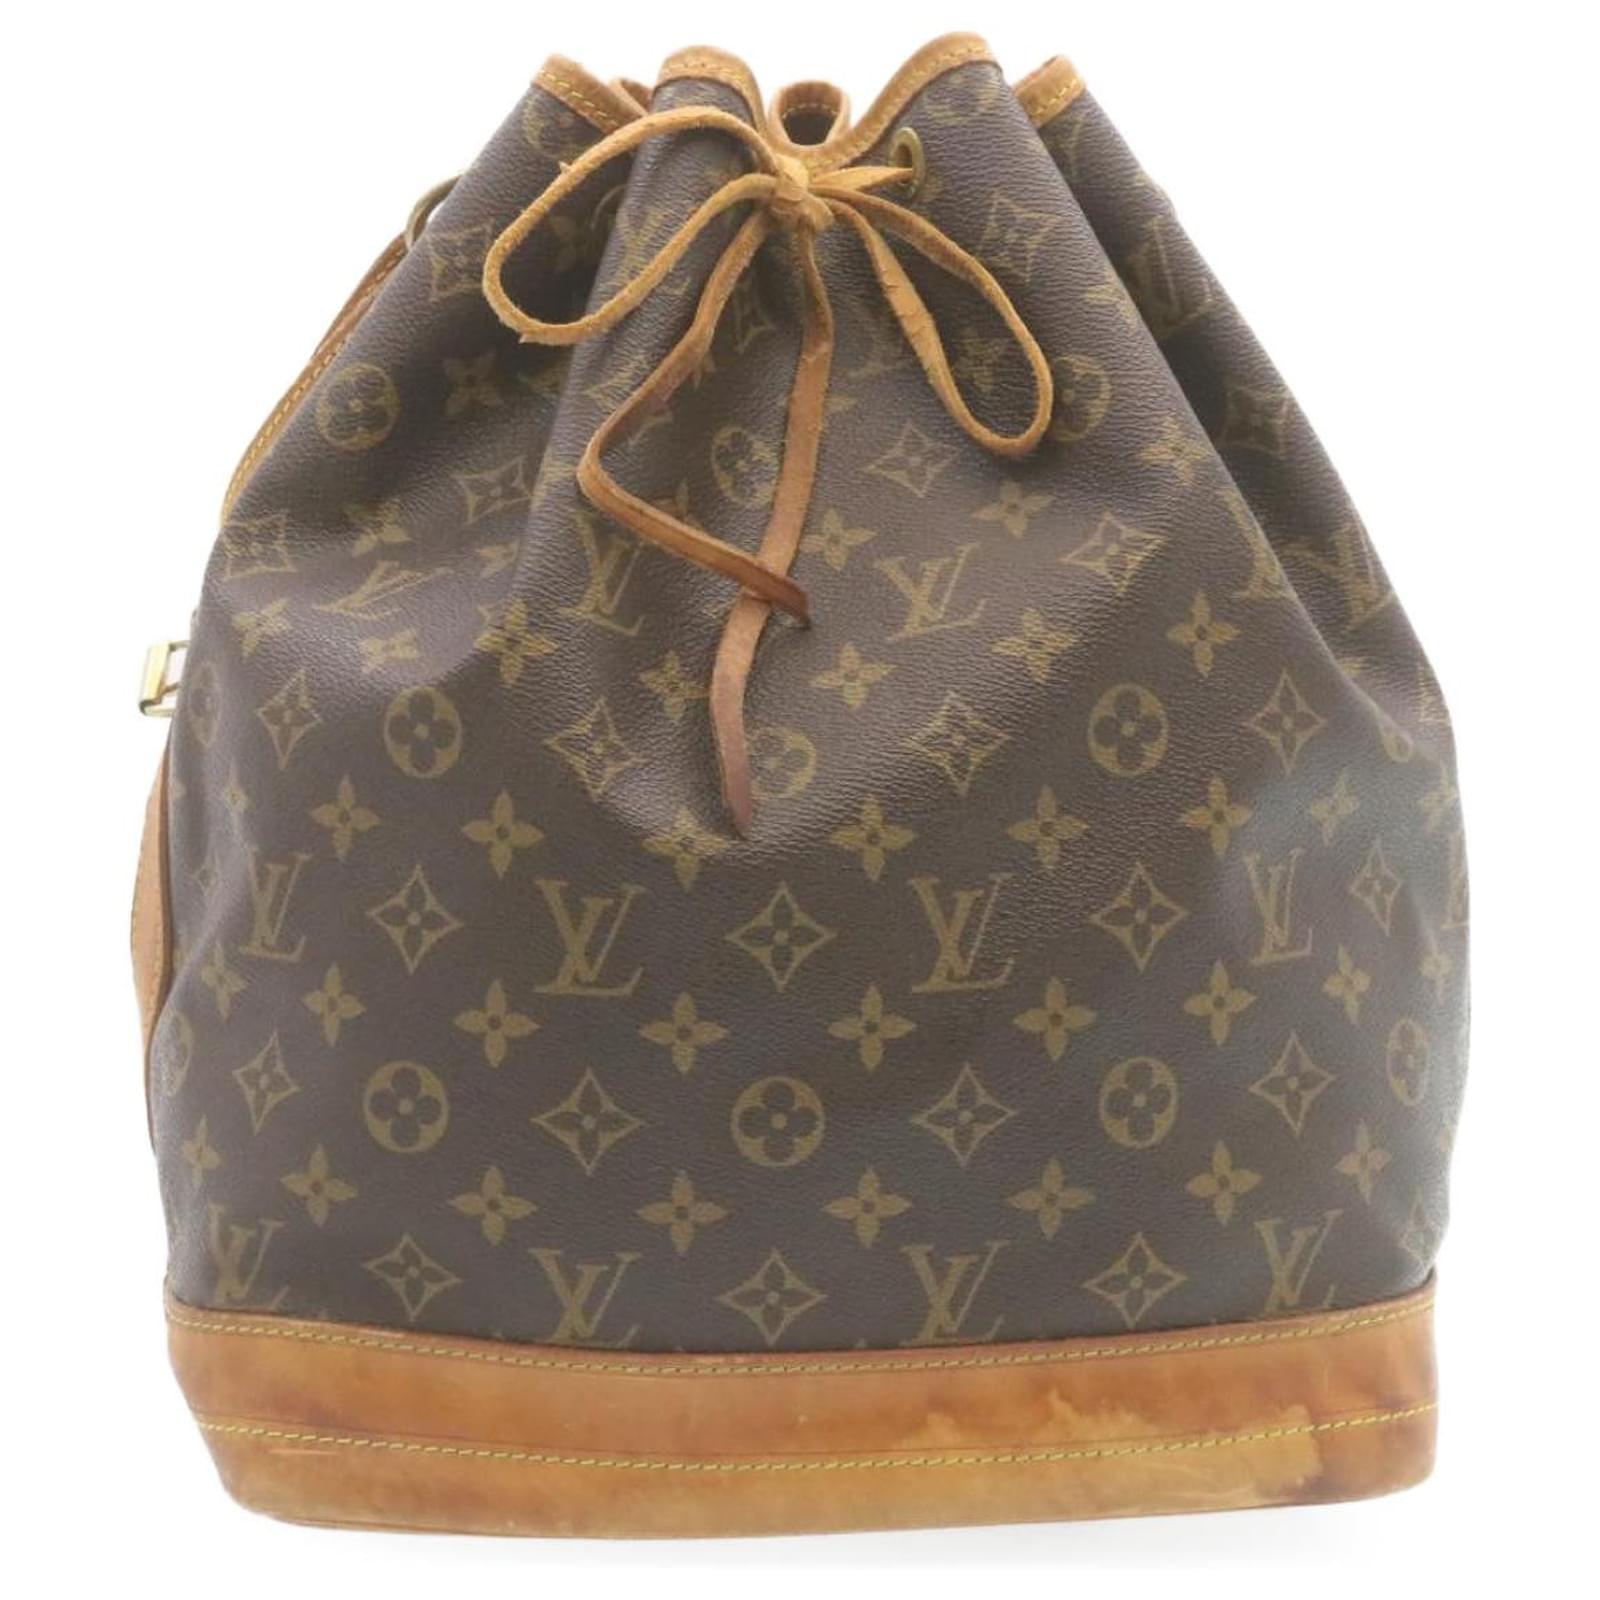 Auth Louis Vuitton Monogram Noe Shoulder Tote Bag M42224 AR0946